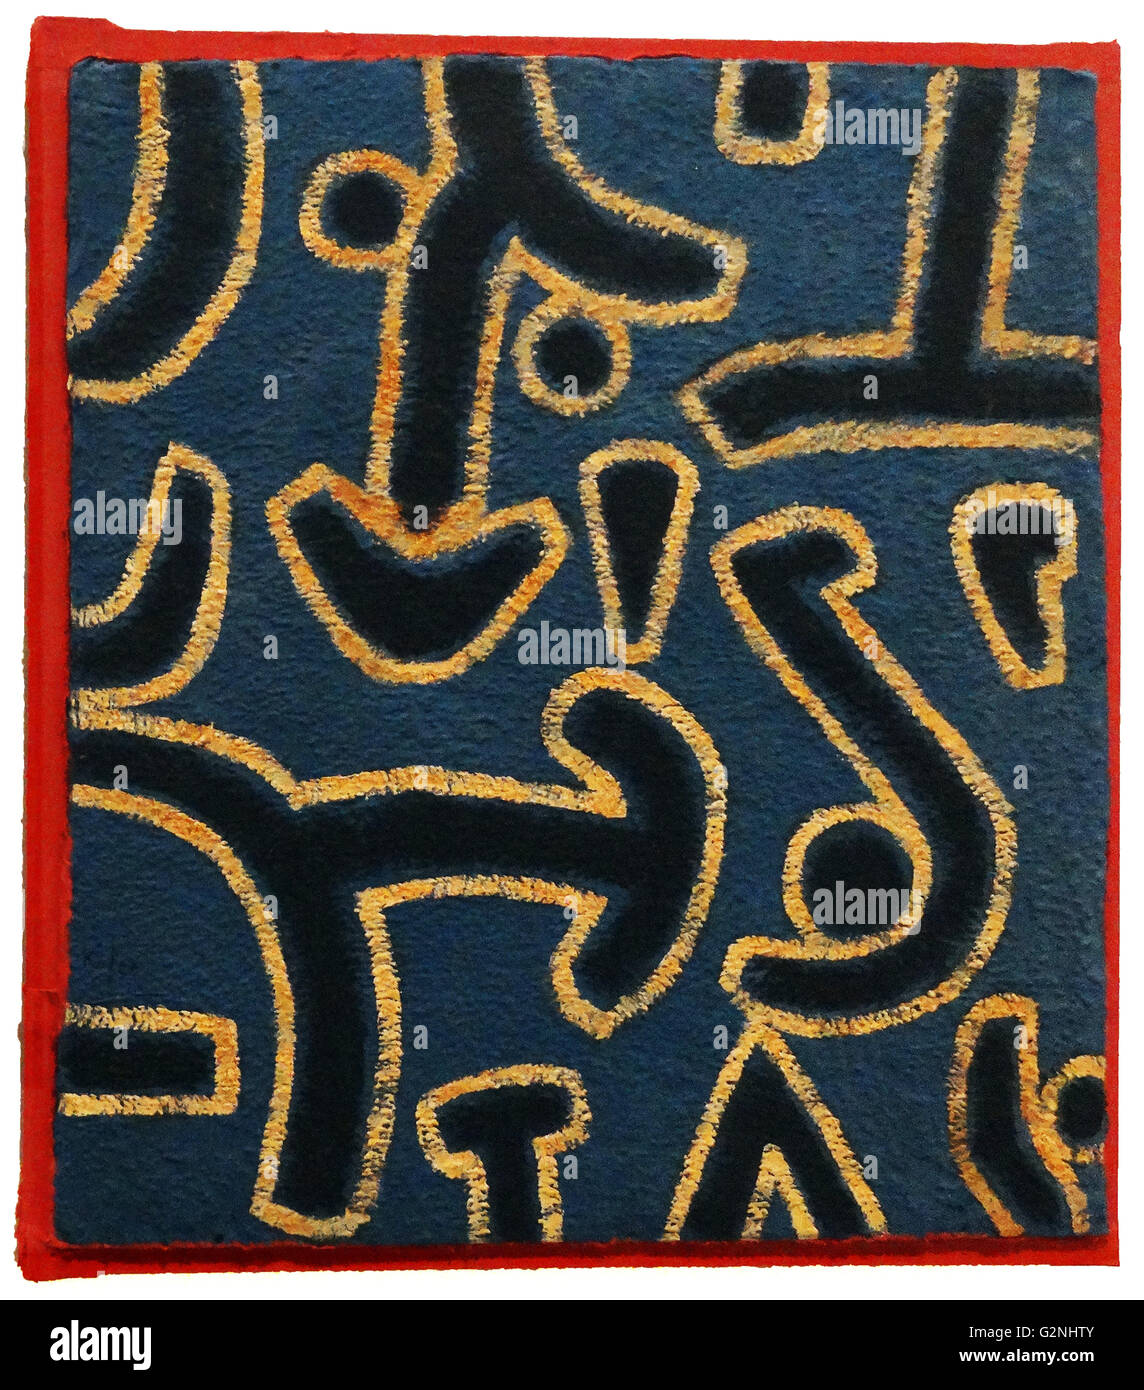 Paul Klee (1879-1940), nacido en Suiza y es considerado un suizo alemán. Su estilo muy individual fue influenciado por los movimientos en el arte que incluía el expresionismo, el cubismo y el surrealismo. Foto de stock